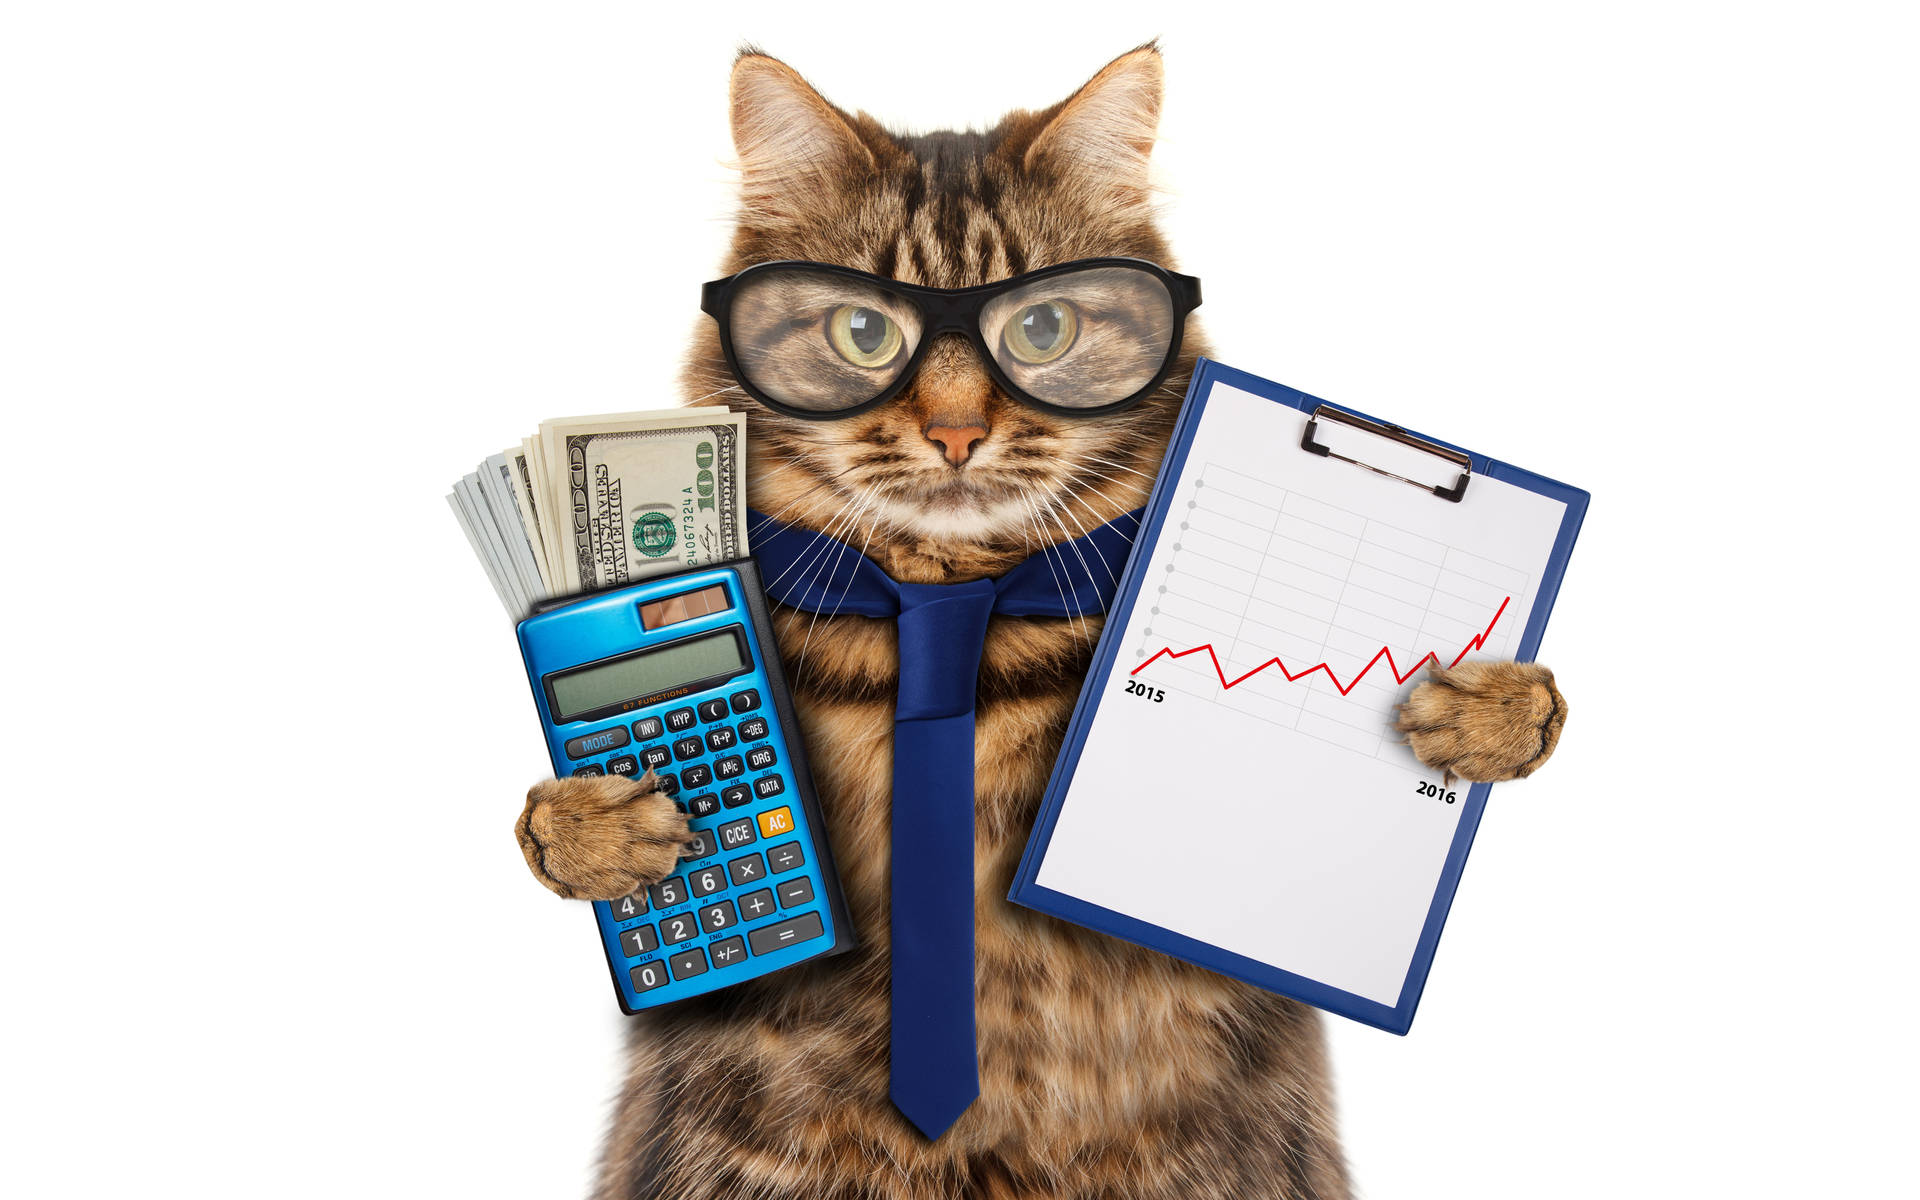 Cat Holding A Calculator